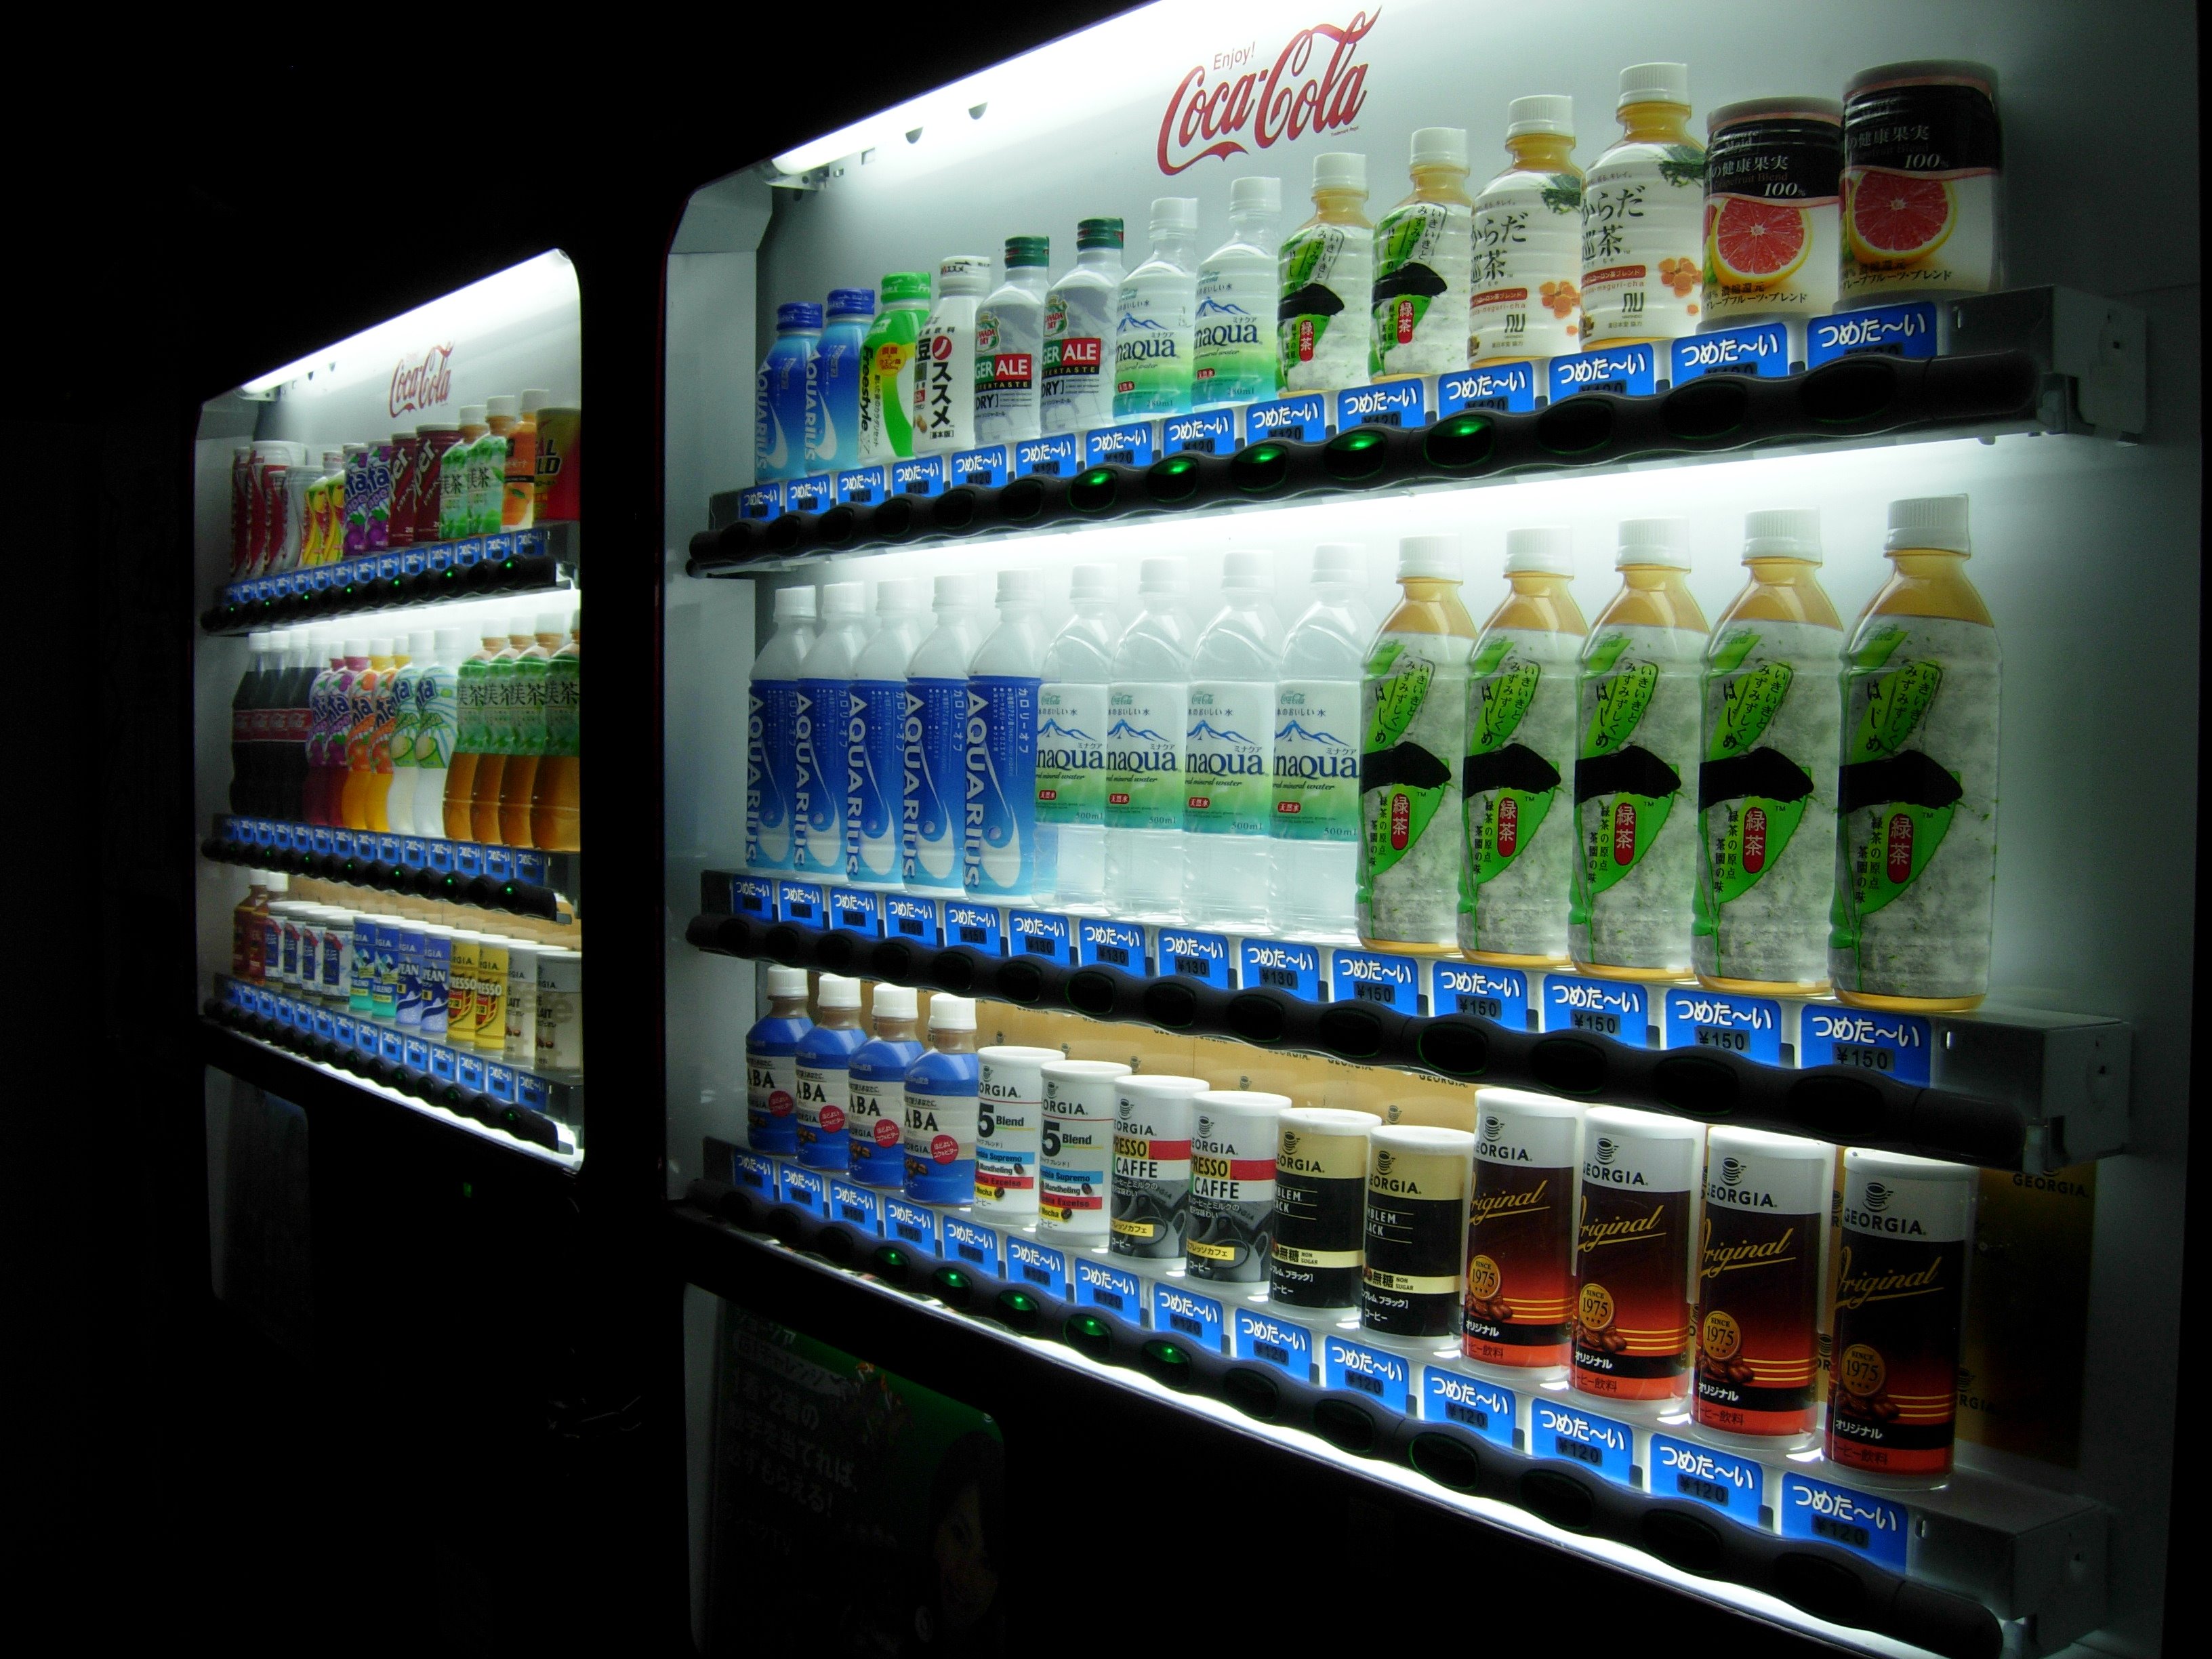 bottles, drinks - desktop wallpaper